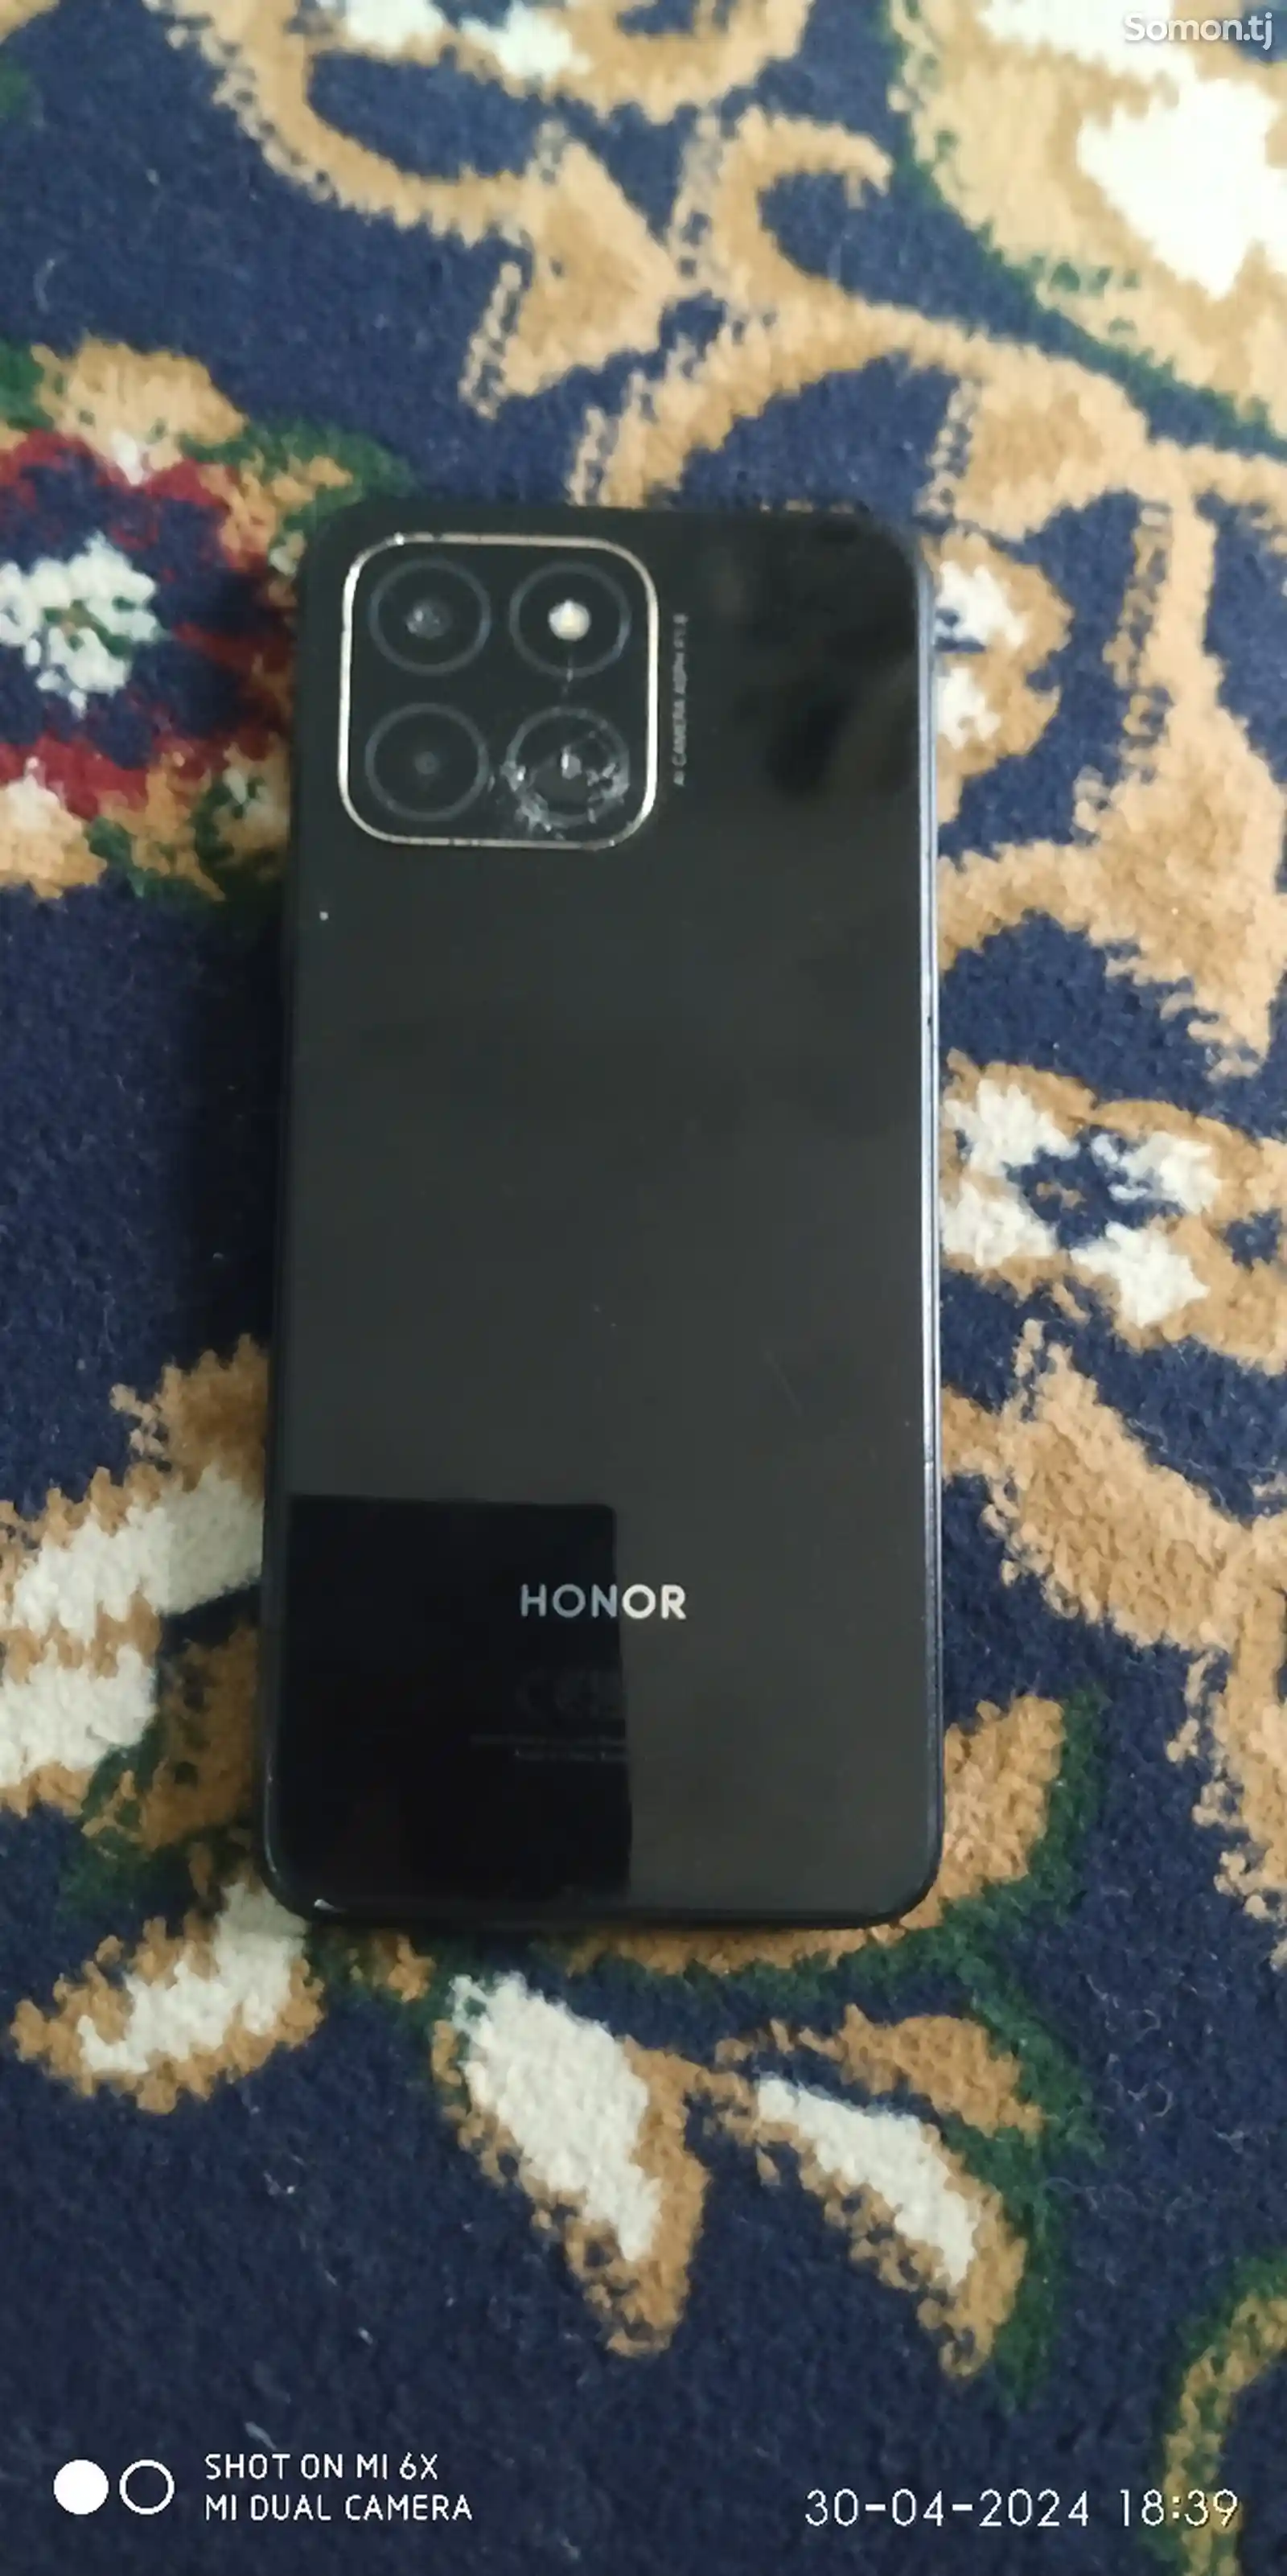 Honor 6X-3